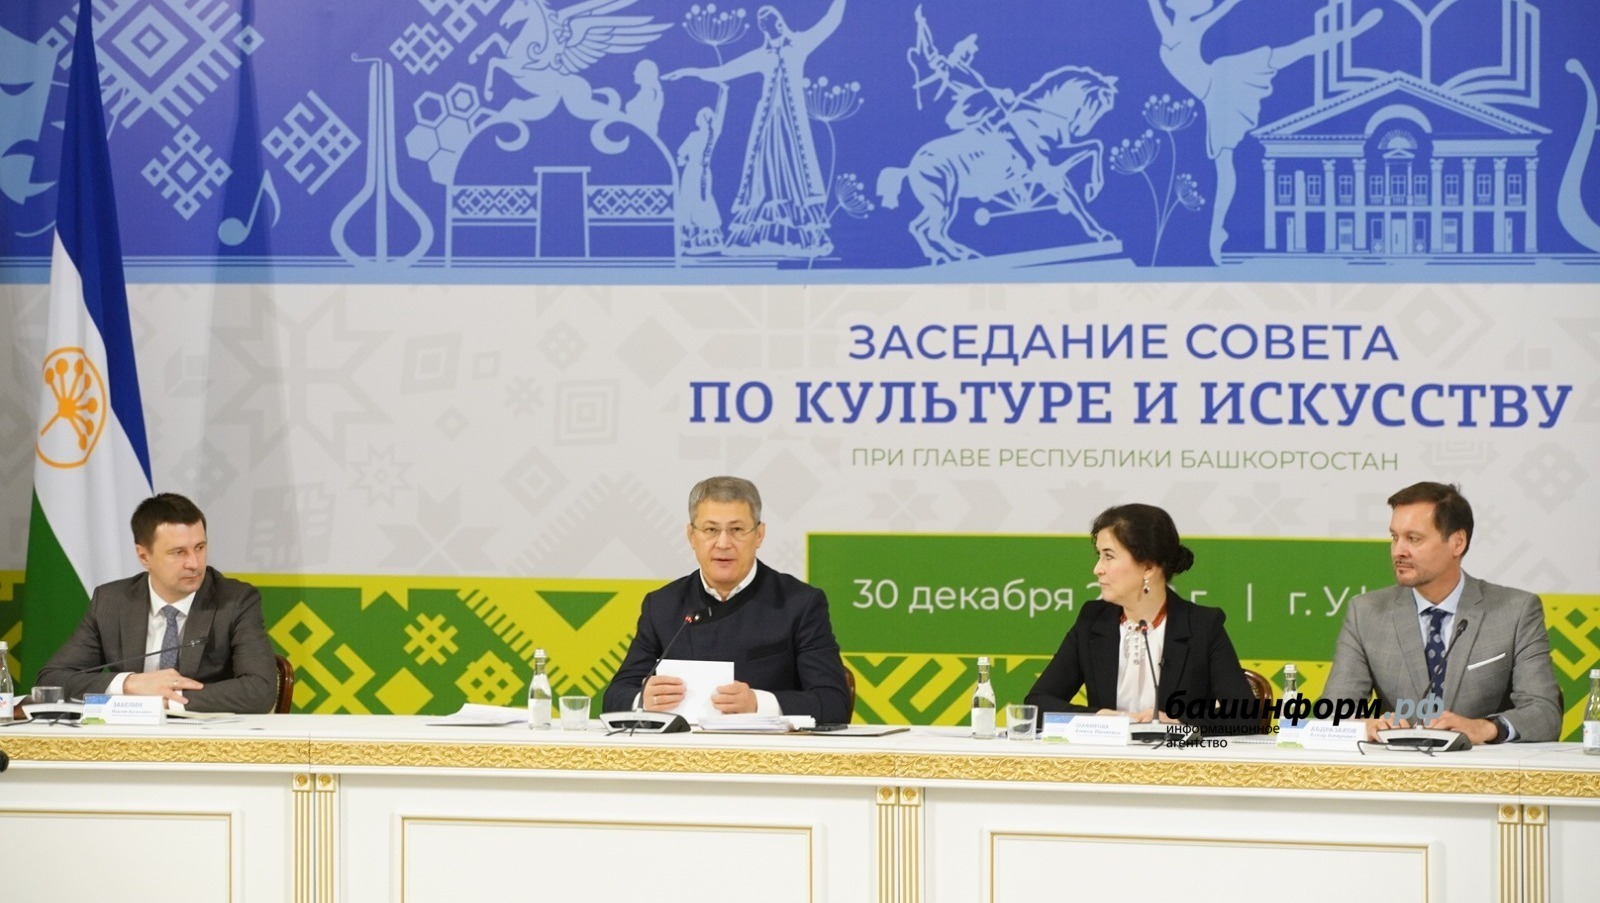 Рaдий Хабиров принял участие в зaседании республиканского совета по культуре